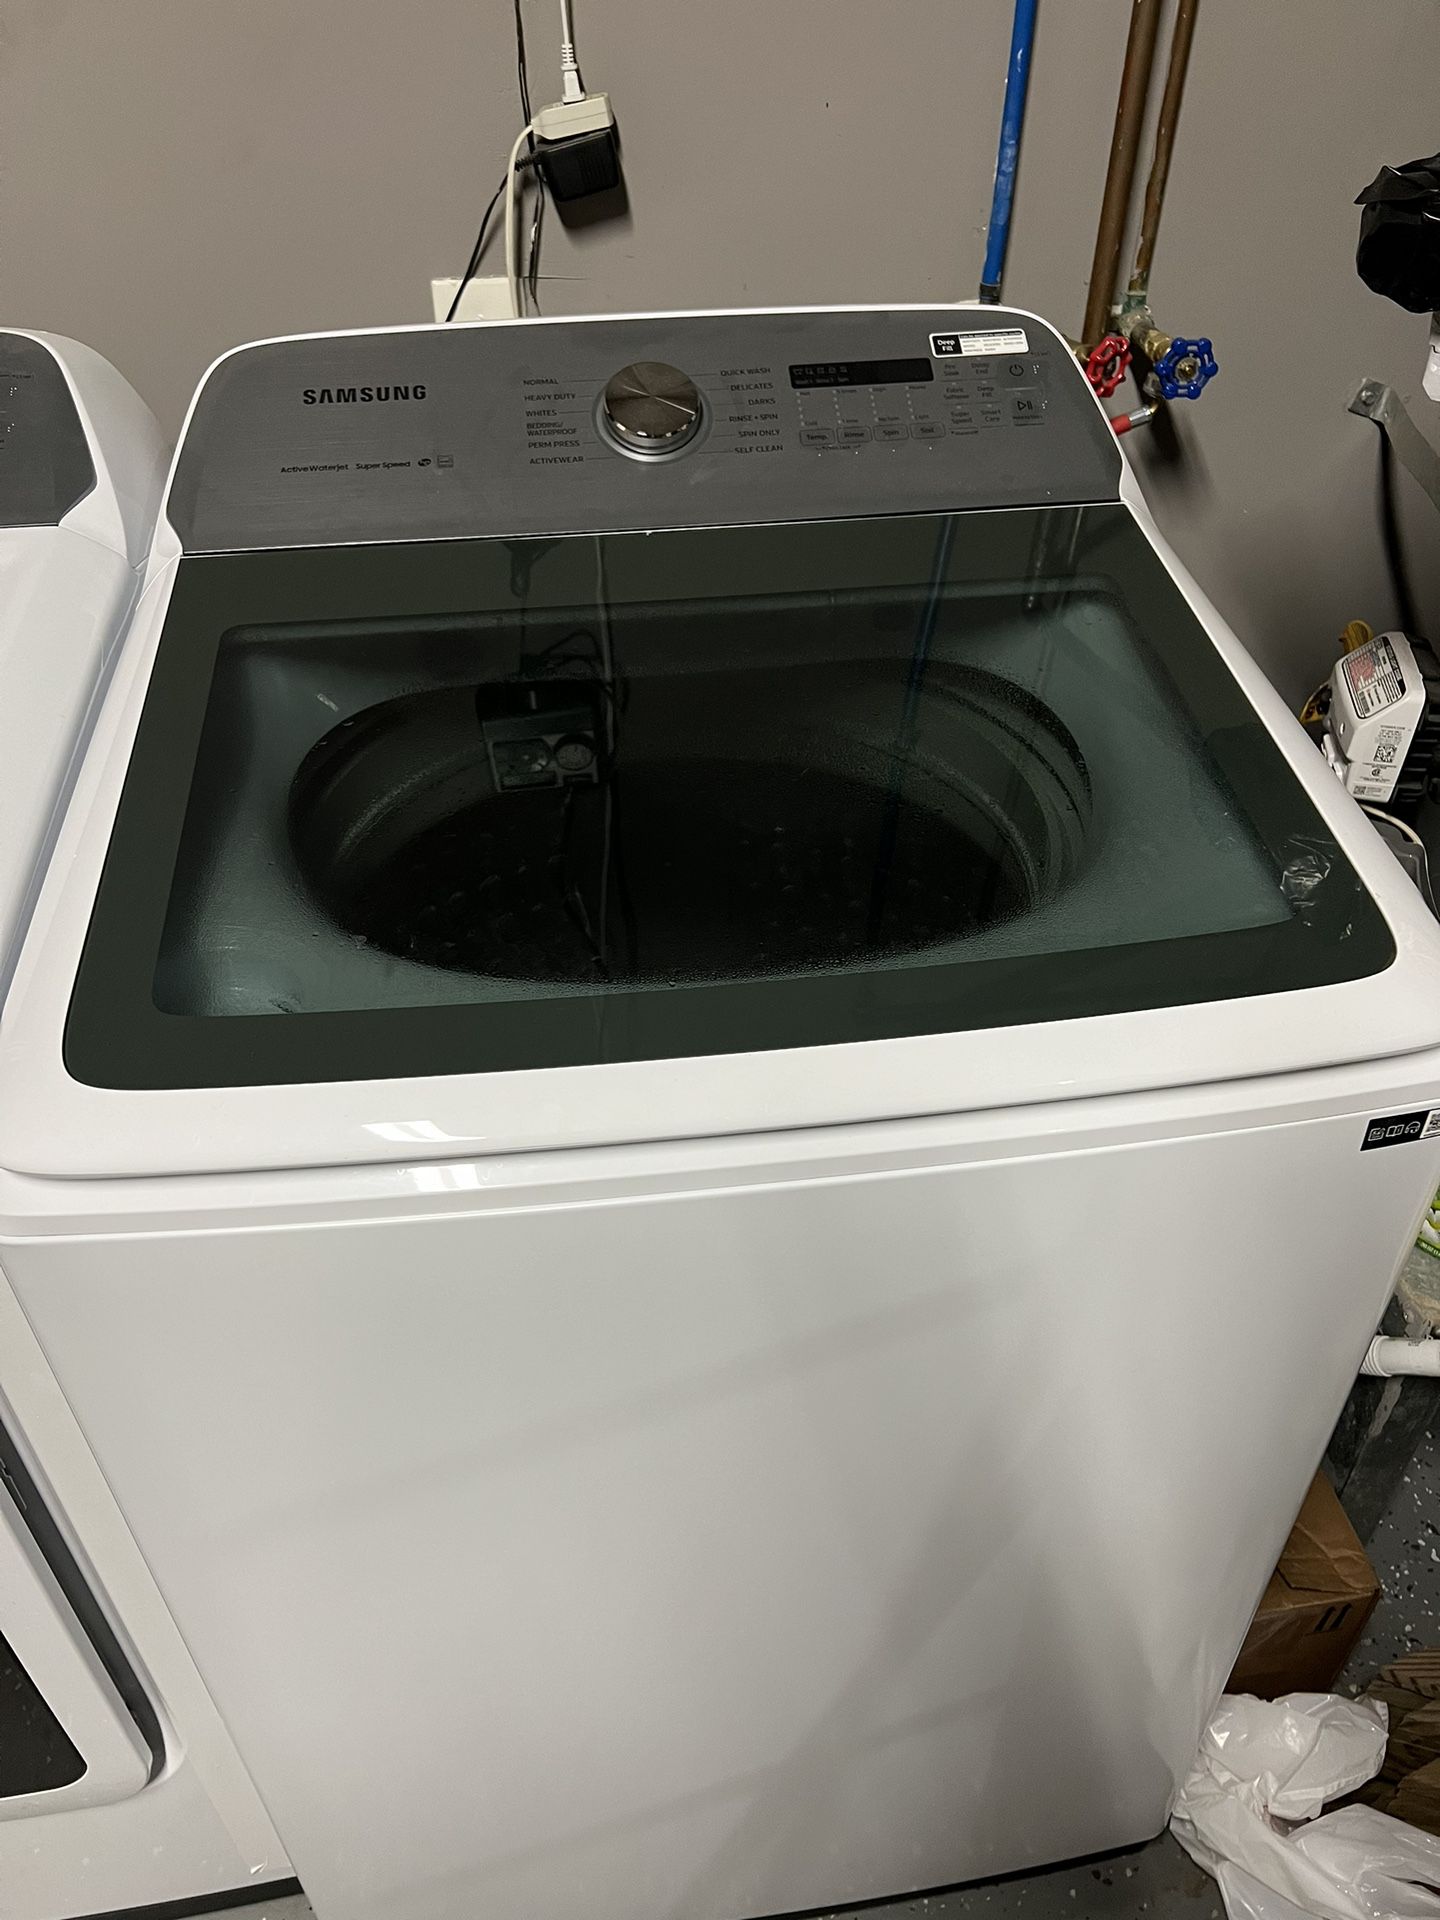 Washer/Dryer